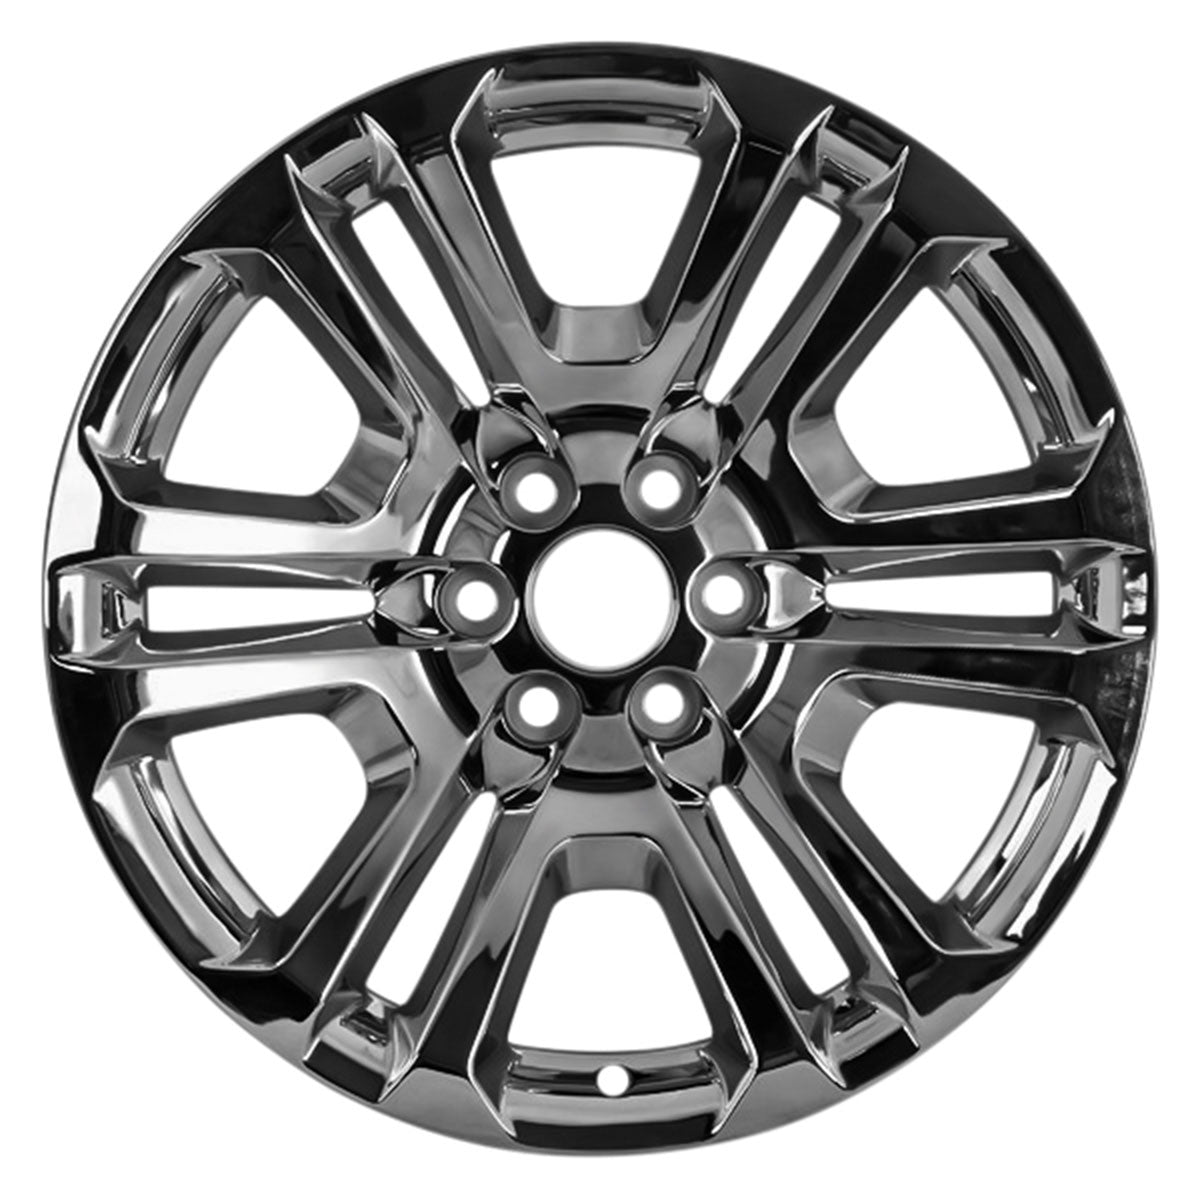 2021 GMC Yukon XL 22" OEM Wheel Rim W4741CHR